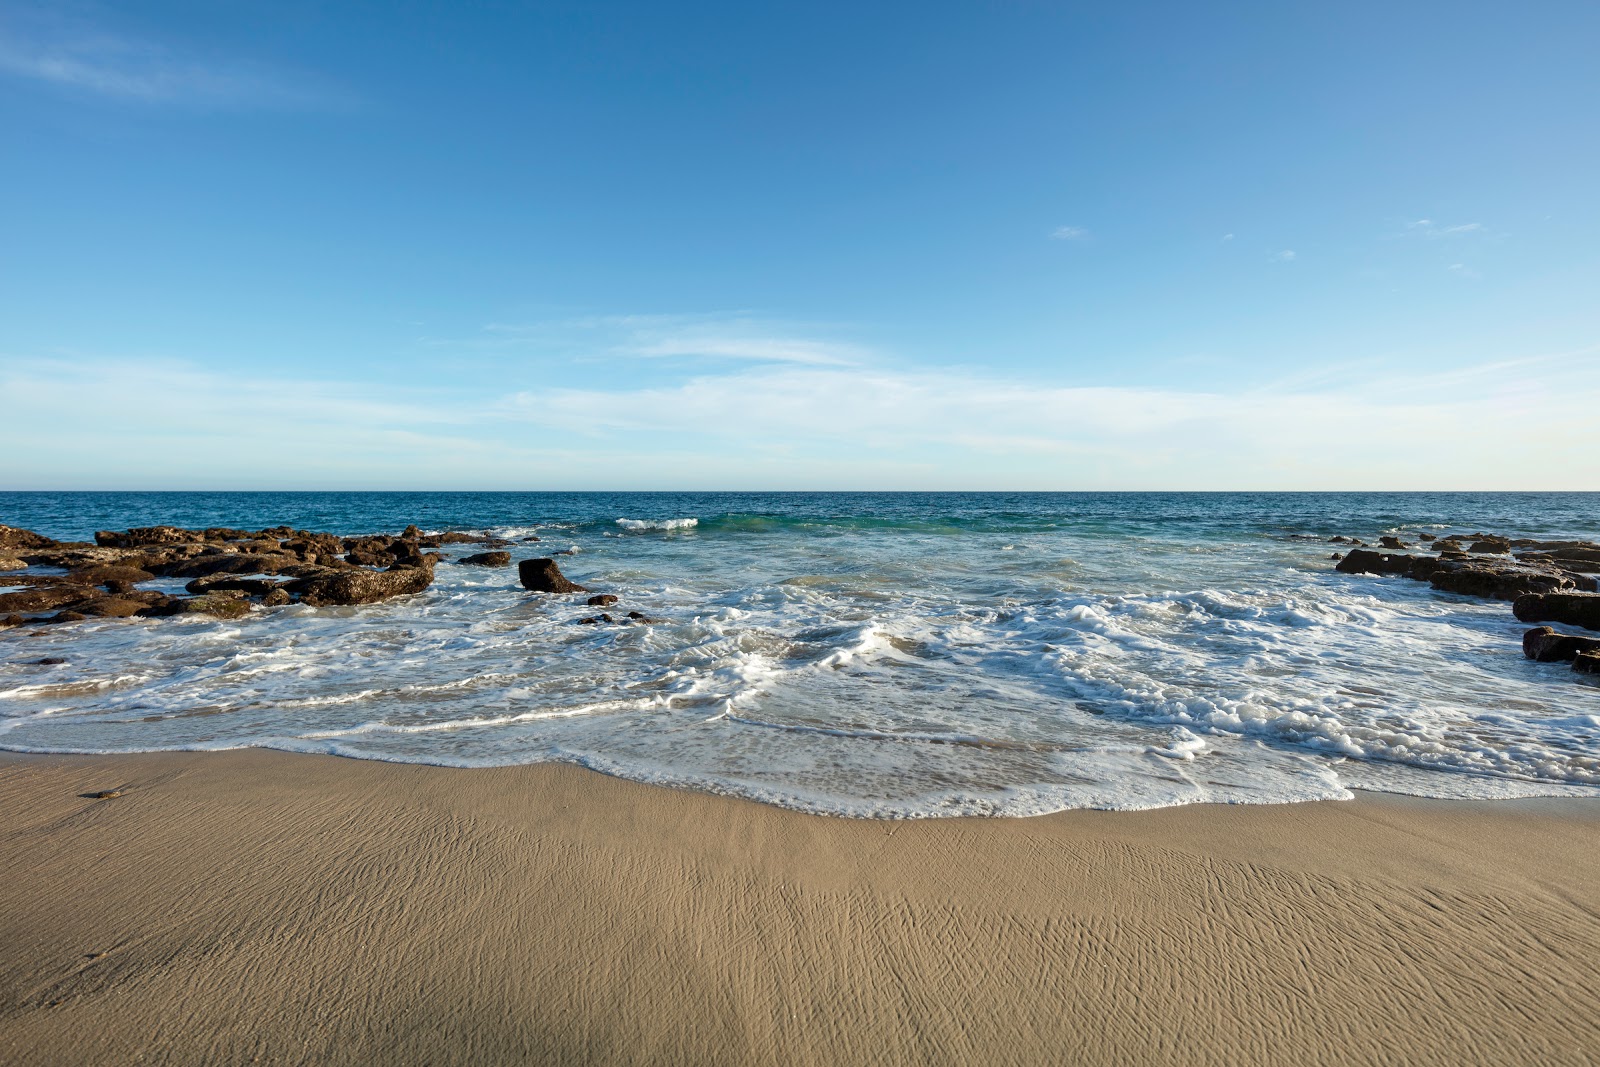 Fotografie cu East Cape Beach - locul popular printre cunoscătorii de relaxare